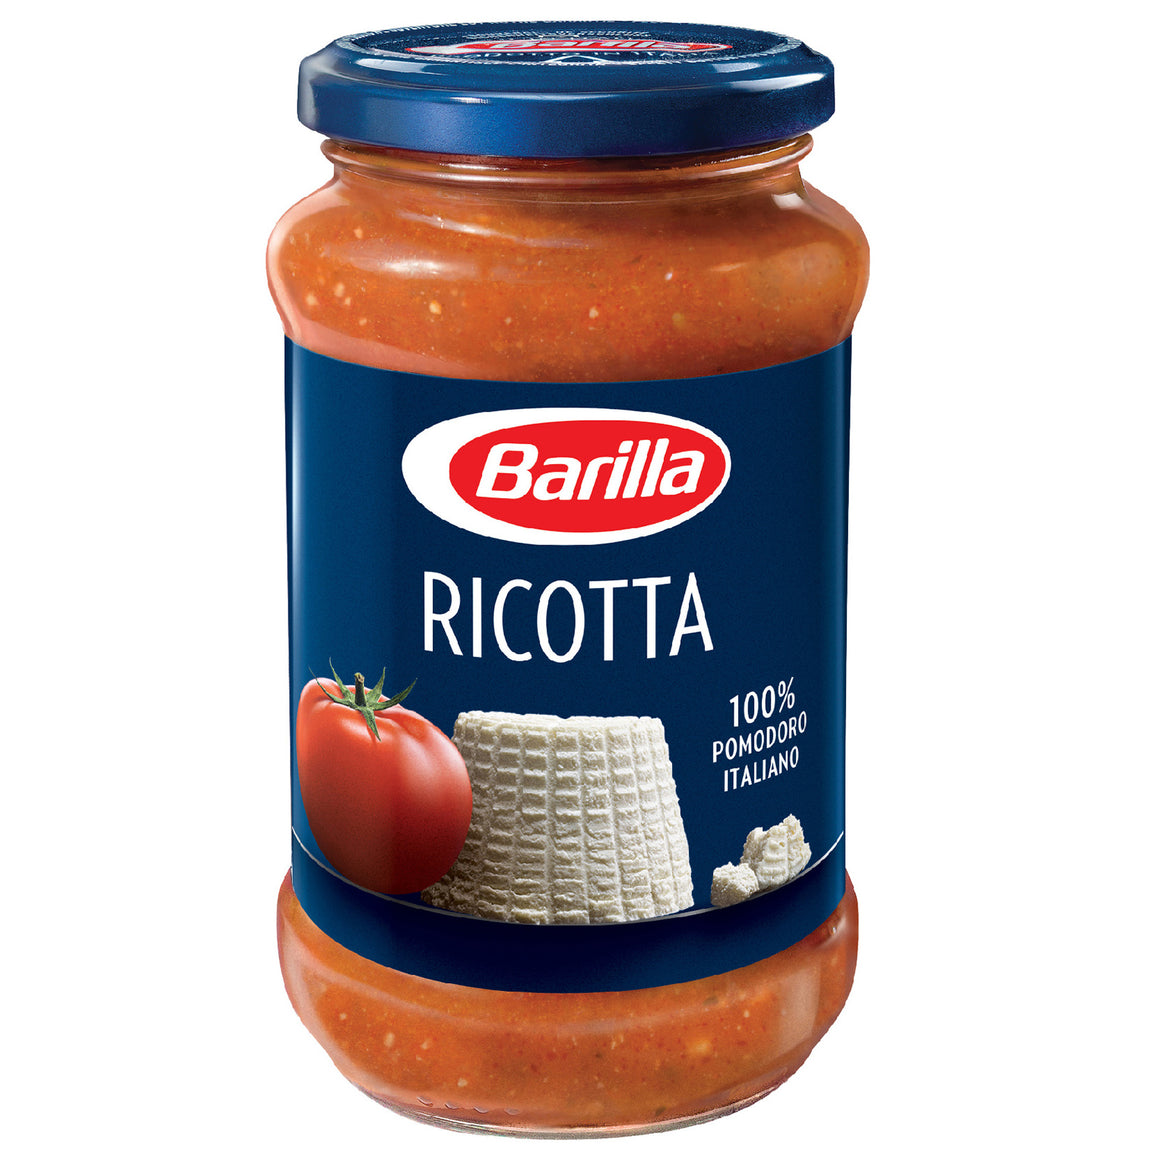 Barilla Ricotta Pasta Sauce with Italian Tomato 400g